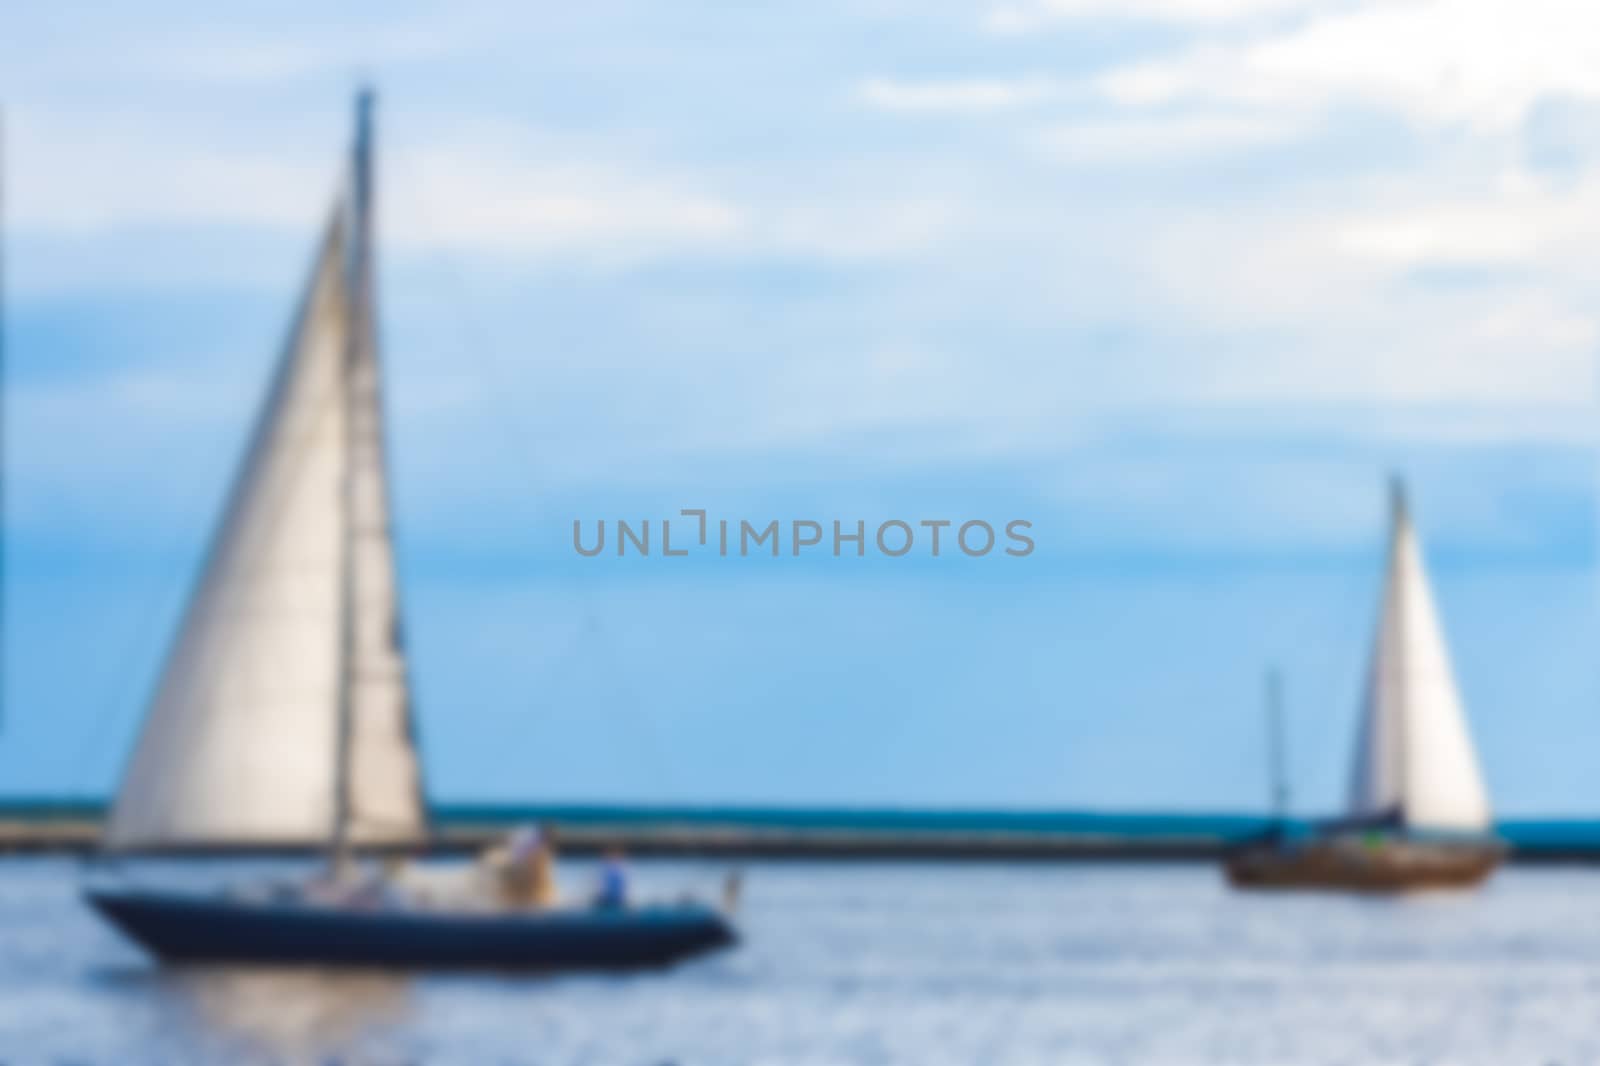 Blue sailboat - blurred image by sengnsp